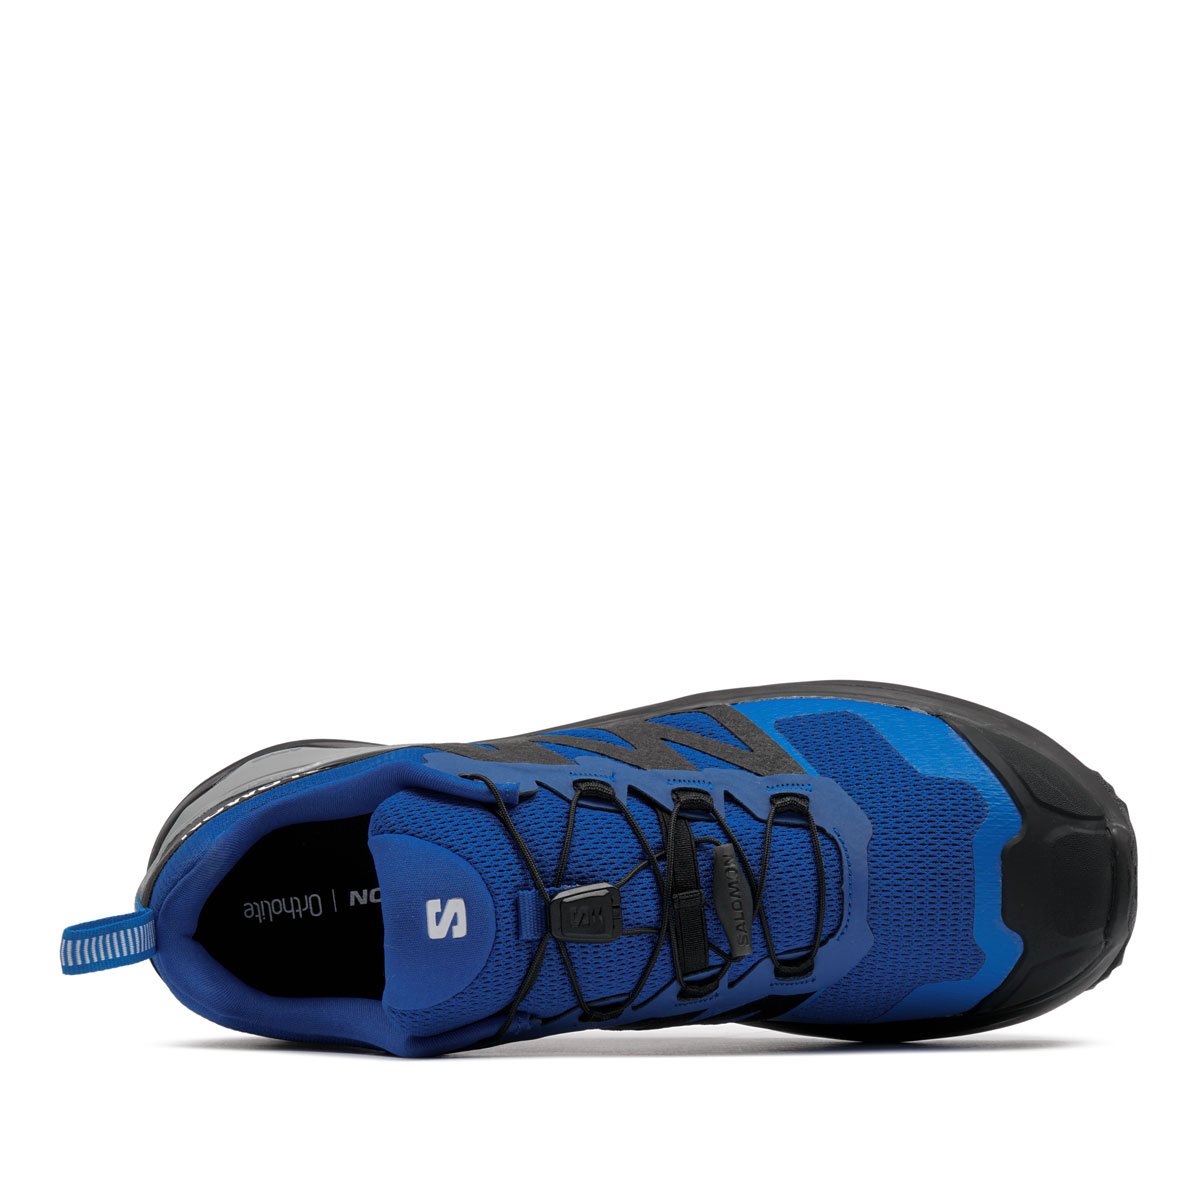 Salomon X-Adventure Мъжки спортни обувки 473208